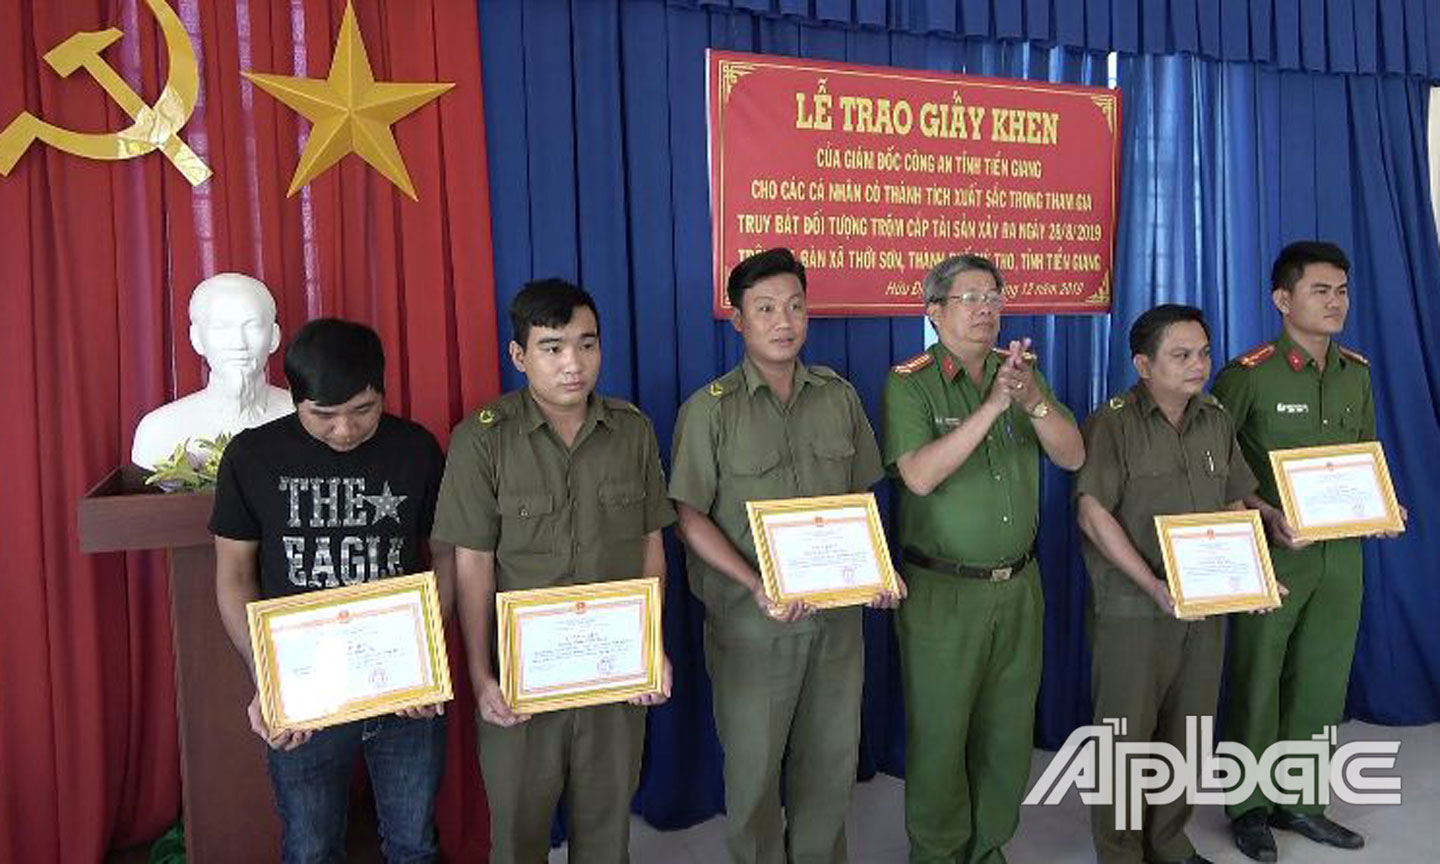 Thượng tá Phạm Thế Kim, Phó Trưởng Công an TP. Mỹ Tho, trao Giấy khen của Giám đốc Công an tỉnh Tiền Giang cho 5 cá nhân.